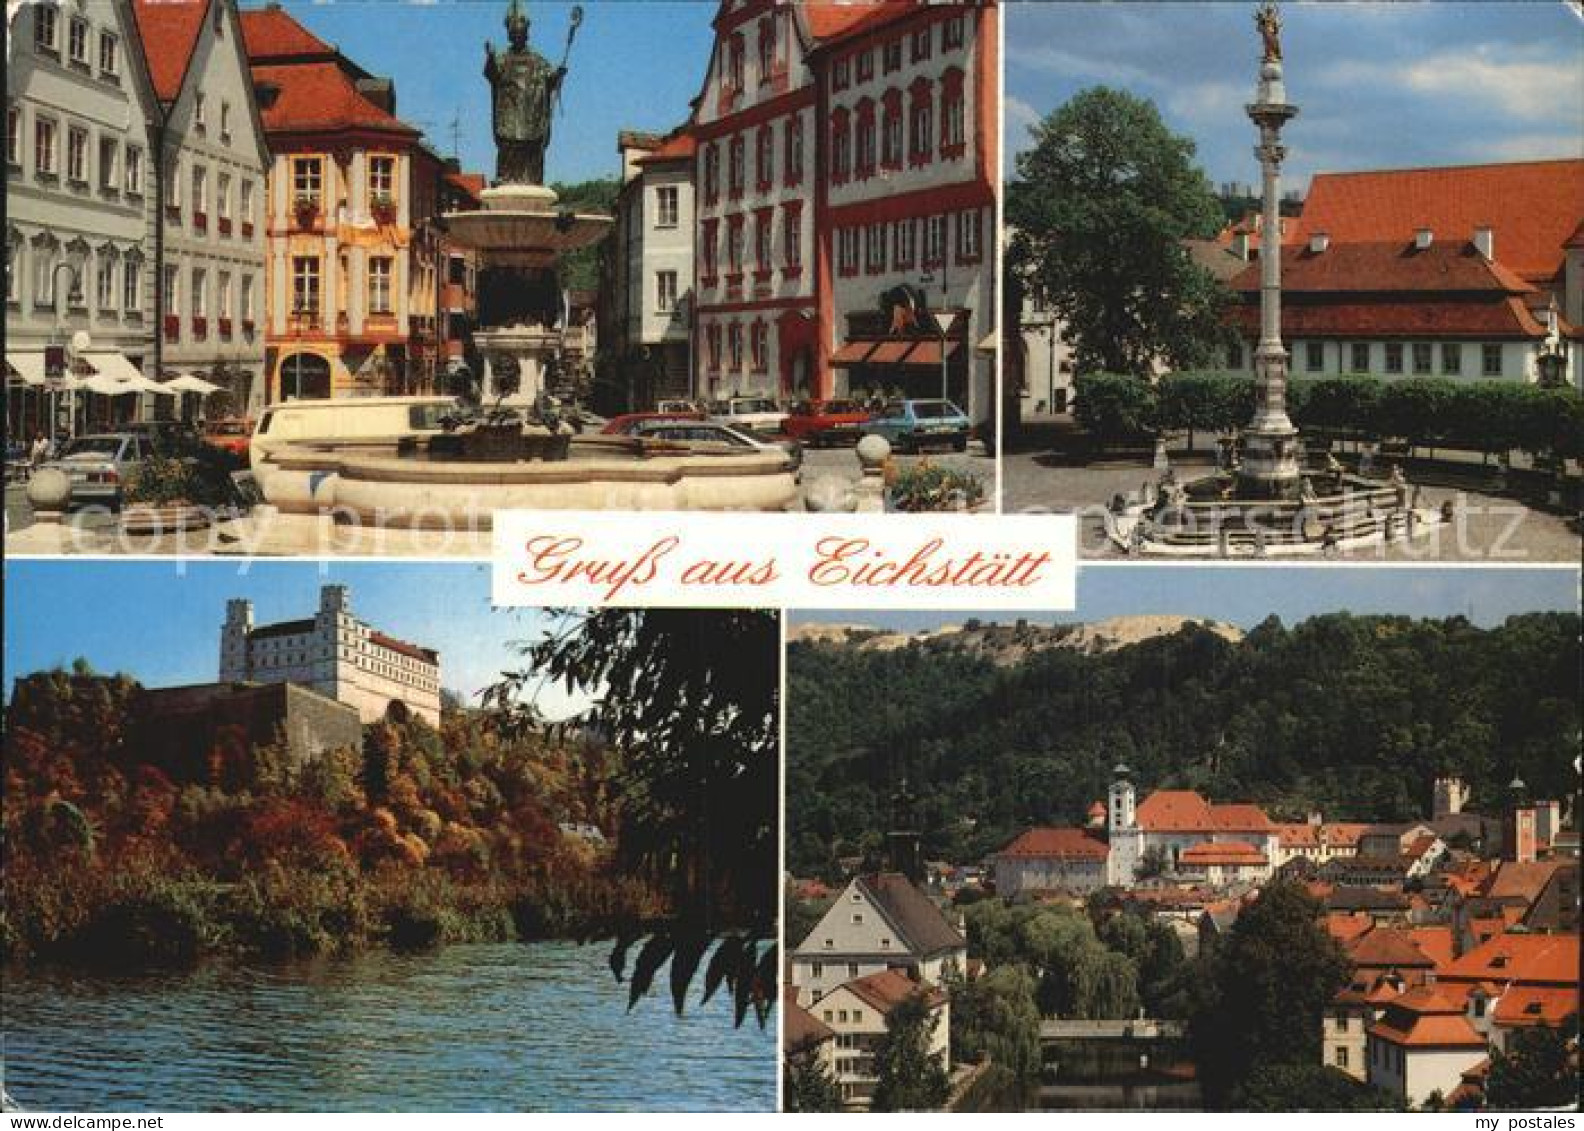 72525250 Eichstaett Oberbayern Markt Brunnen Saeule Schloss Teilansicht Blumenbe - Eichstätt